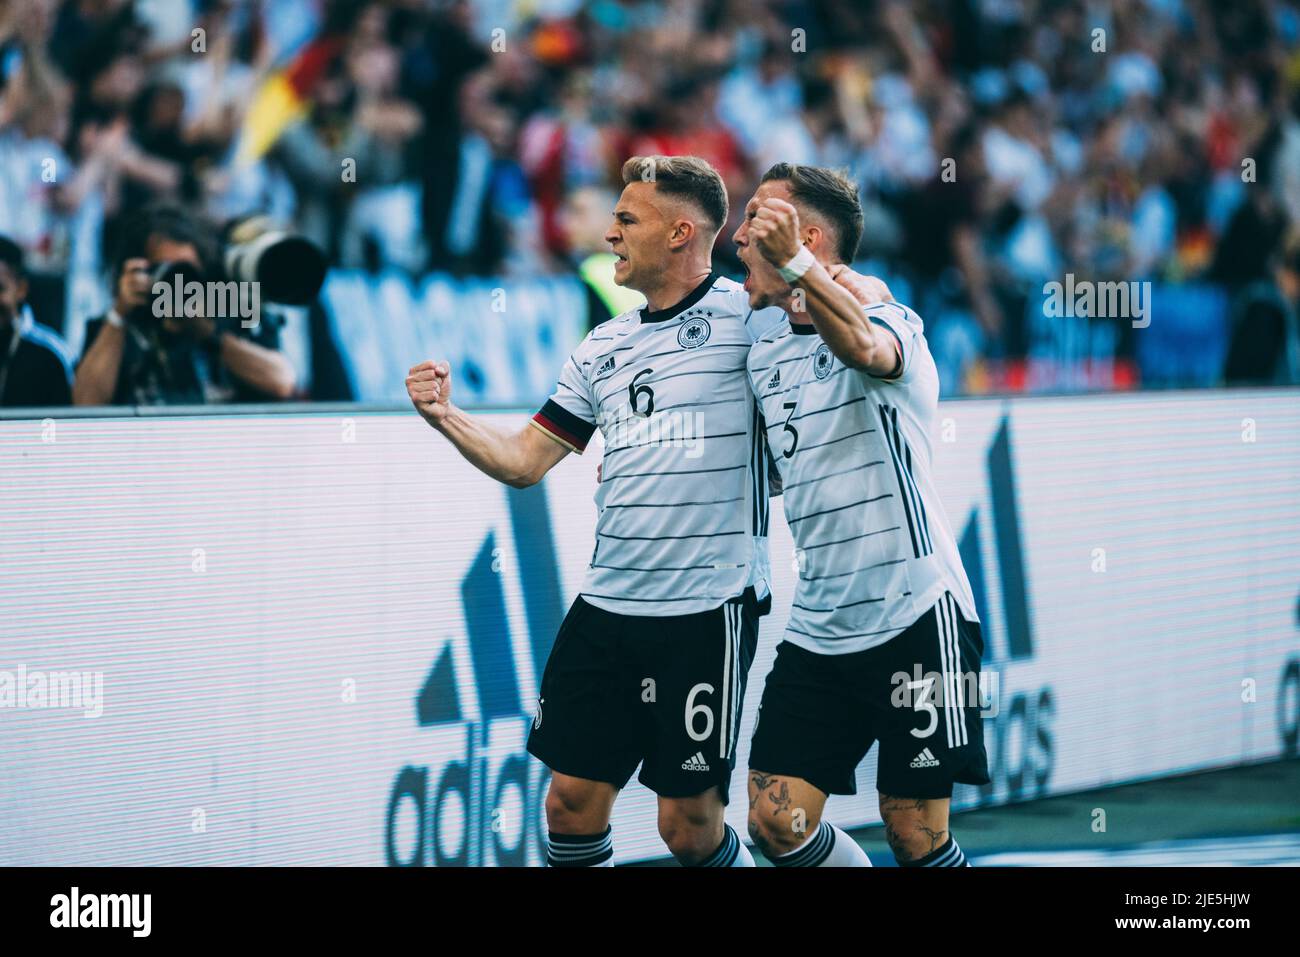 Mönchengladbach, Borussia-Park, 14.06.22: Joshua Kimmich (L) schießt das 1:0 Tor und jubelt beim Länderspiel zwischen Deutschland vs. Italien. Foto: Stockfoto